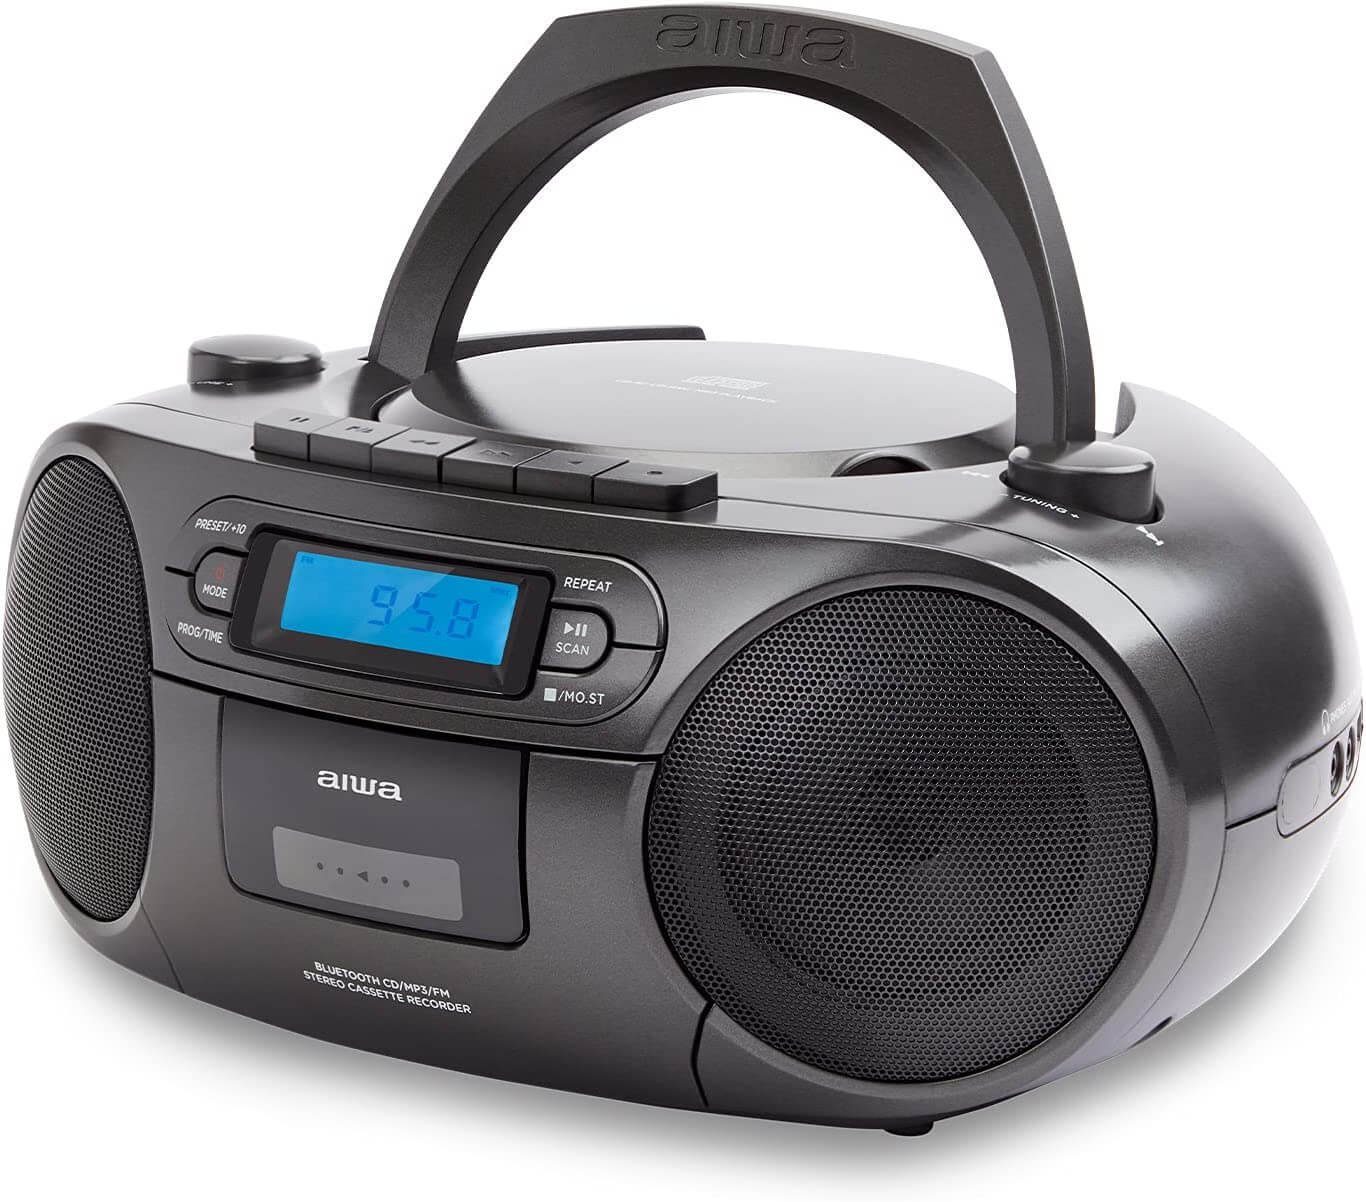 Aiwa BBTC-550 Tragbarer CD Player mit Radio, Kassette, Bluetooth und USB  tragbarer CD-Player (Digitaluhr mit 24h Anzeigeformat 6 W RMS  Audio-Ausgangsleistung)